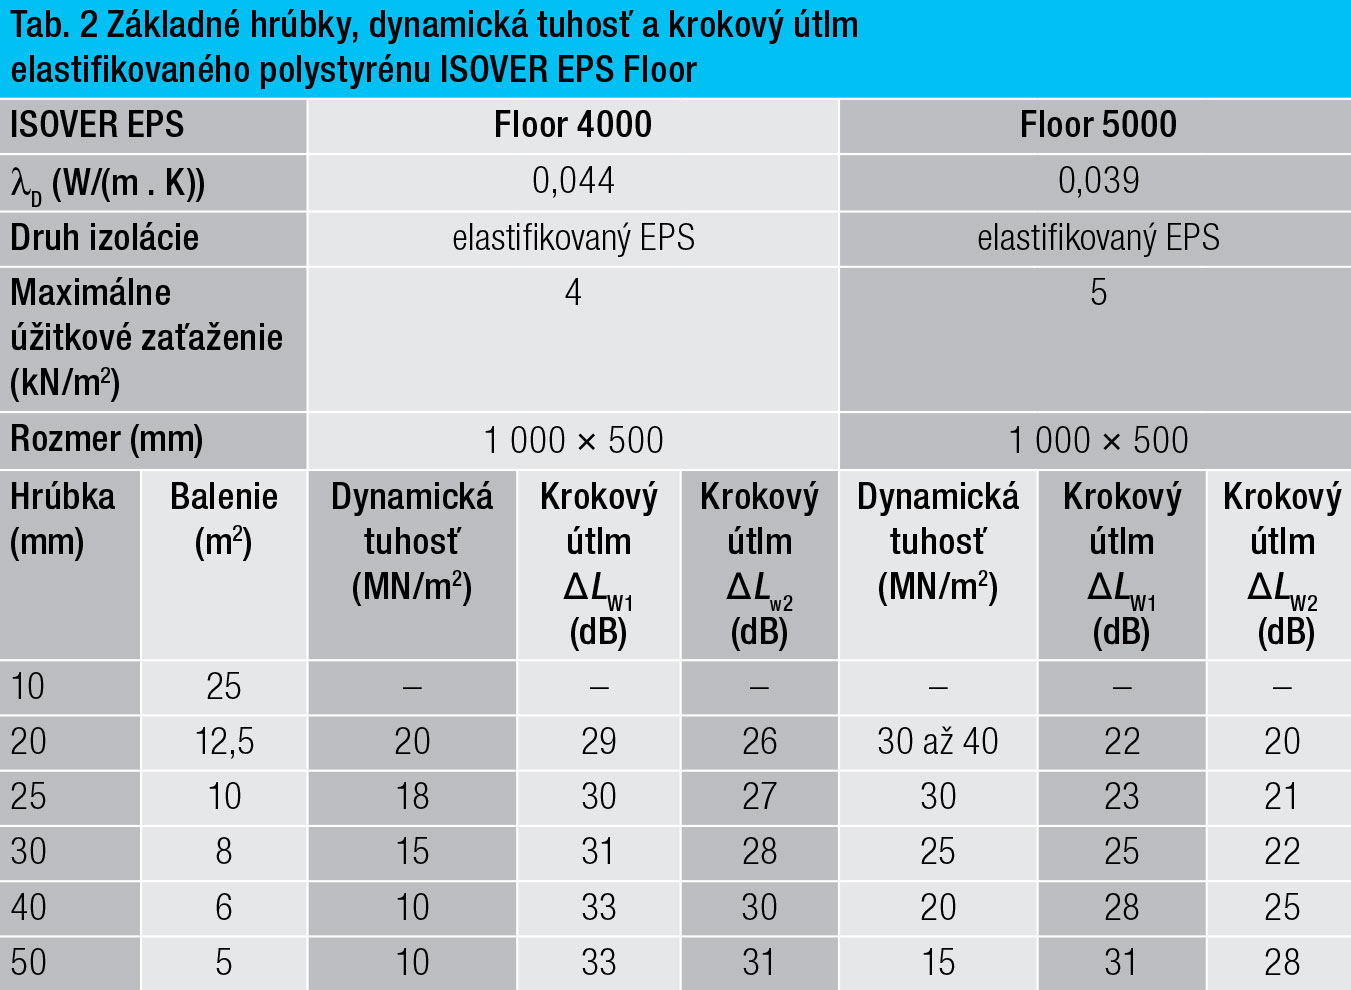 Tab. 2 Základné hrúbky dynamická tuhosť a krokový útlm elastifikovaného polystyrénu ISOVER EPS Floor